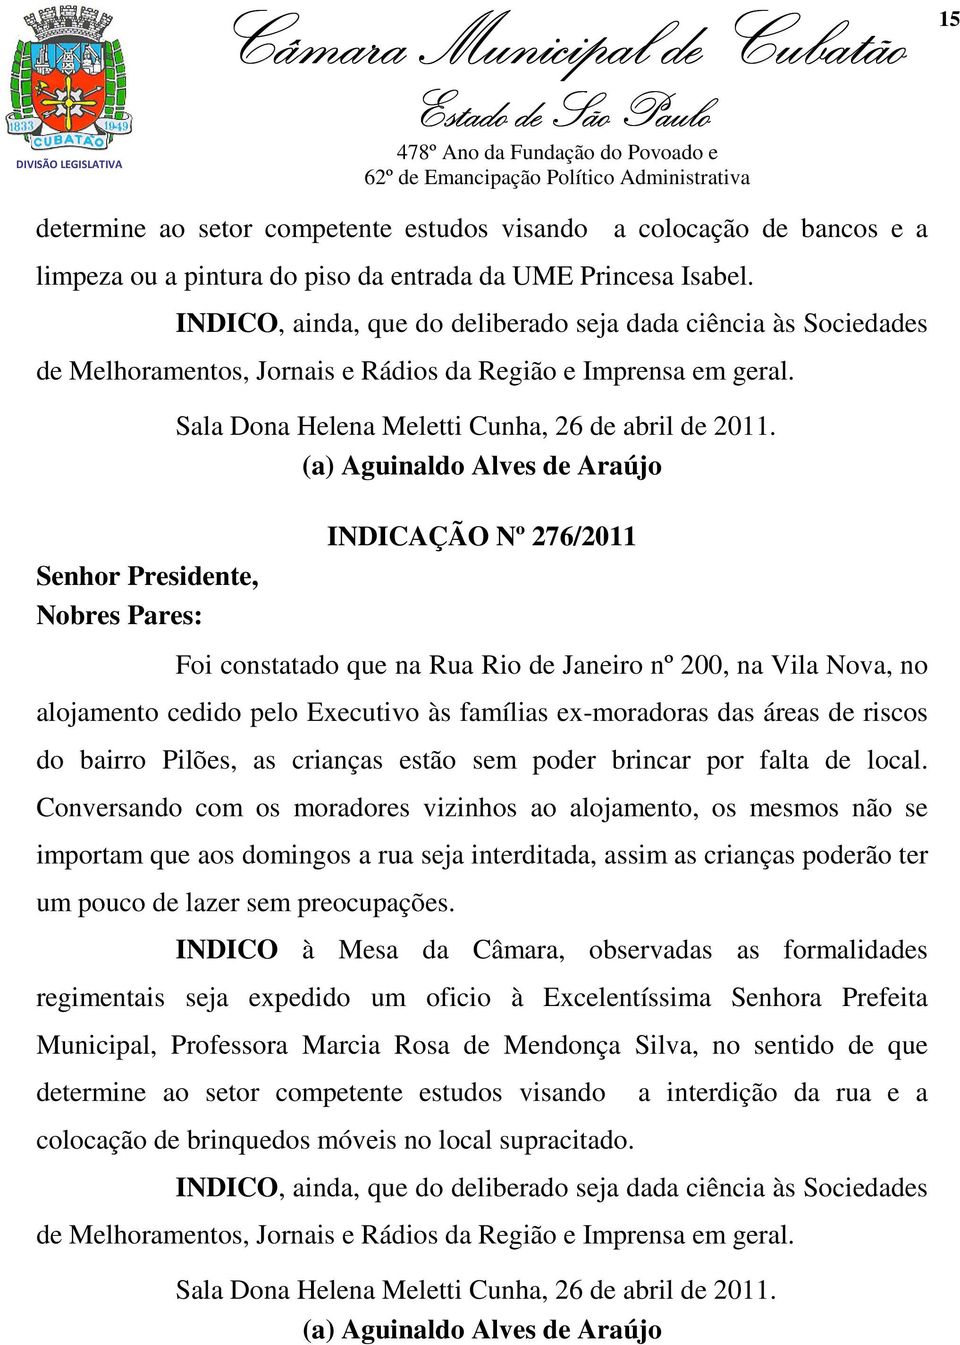 Senhor Presidente, Nobres Pares: Sala Dona Helena Meletti Cunha, 26 de abril de 2011.